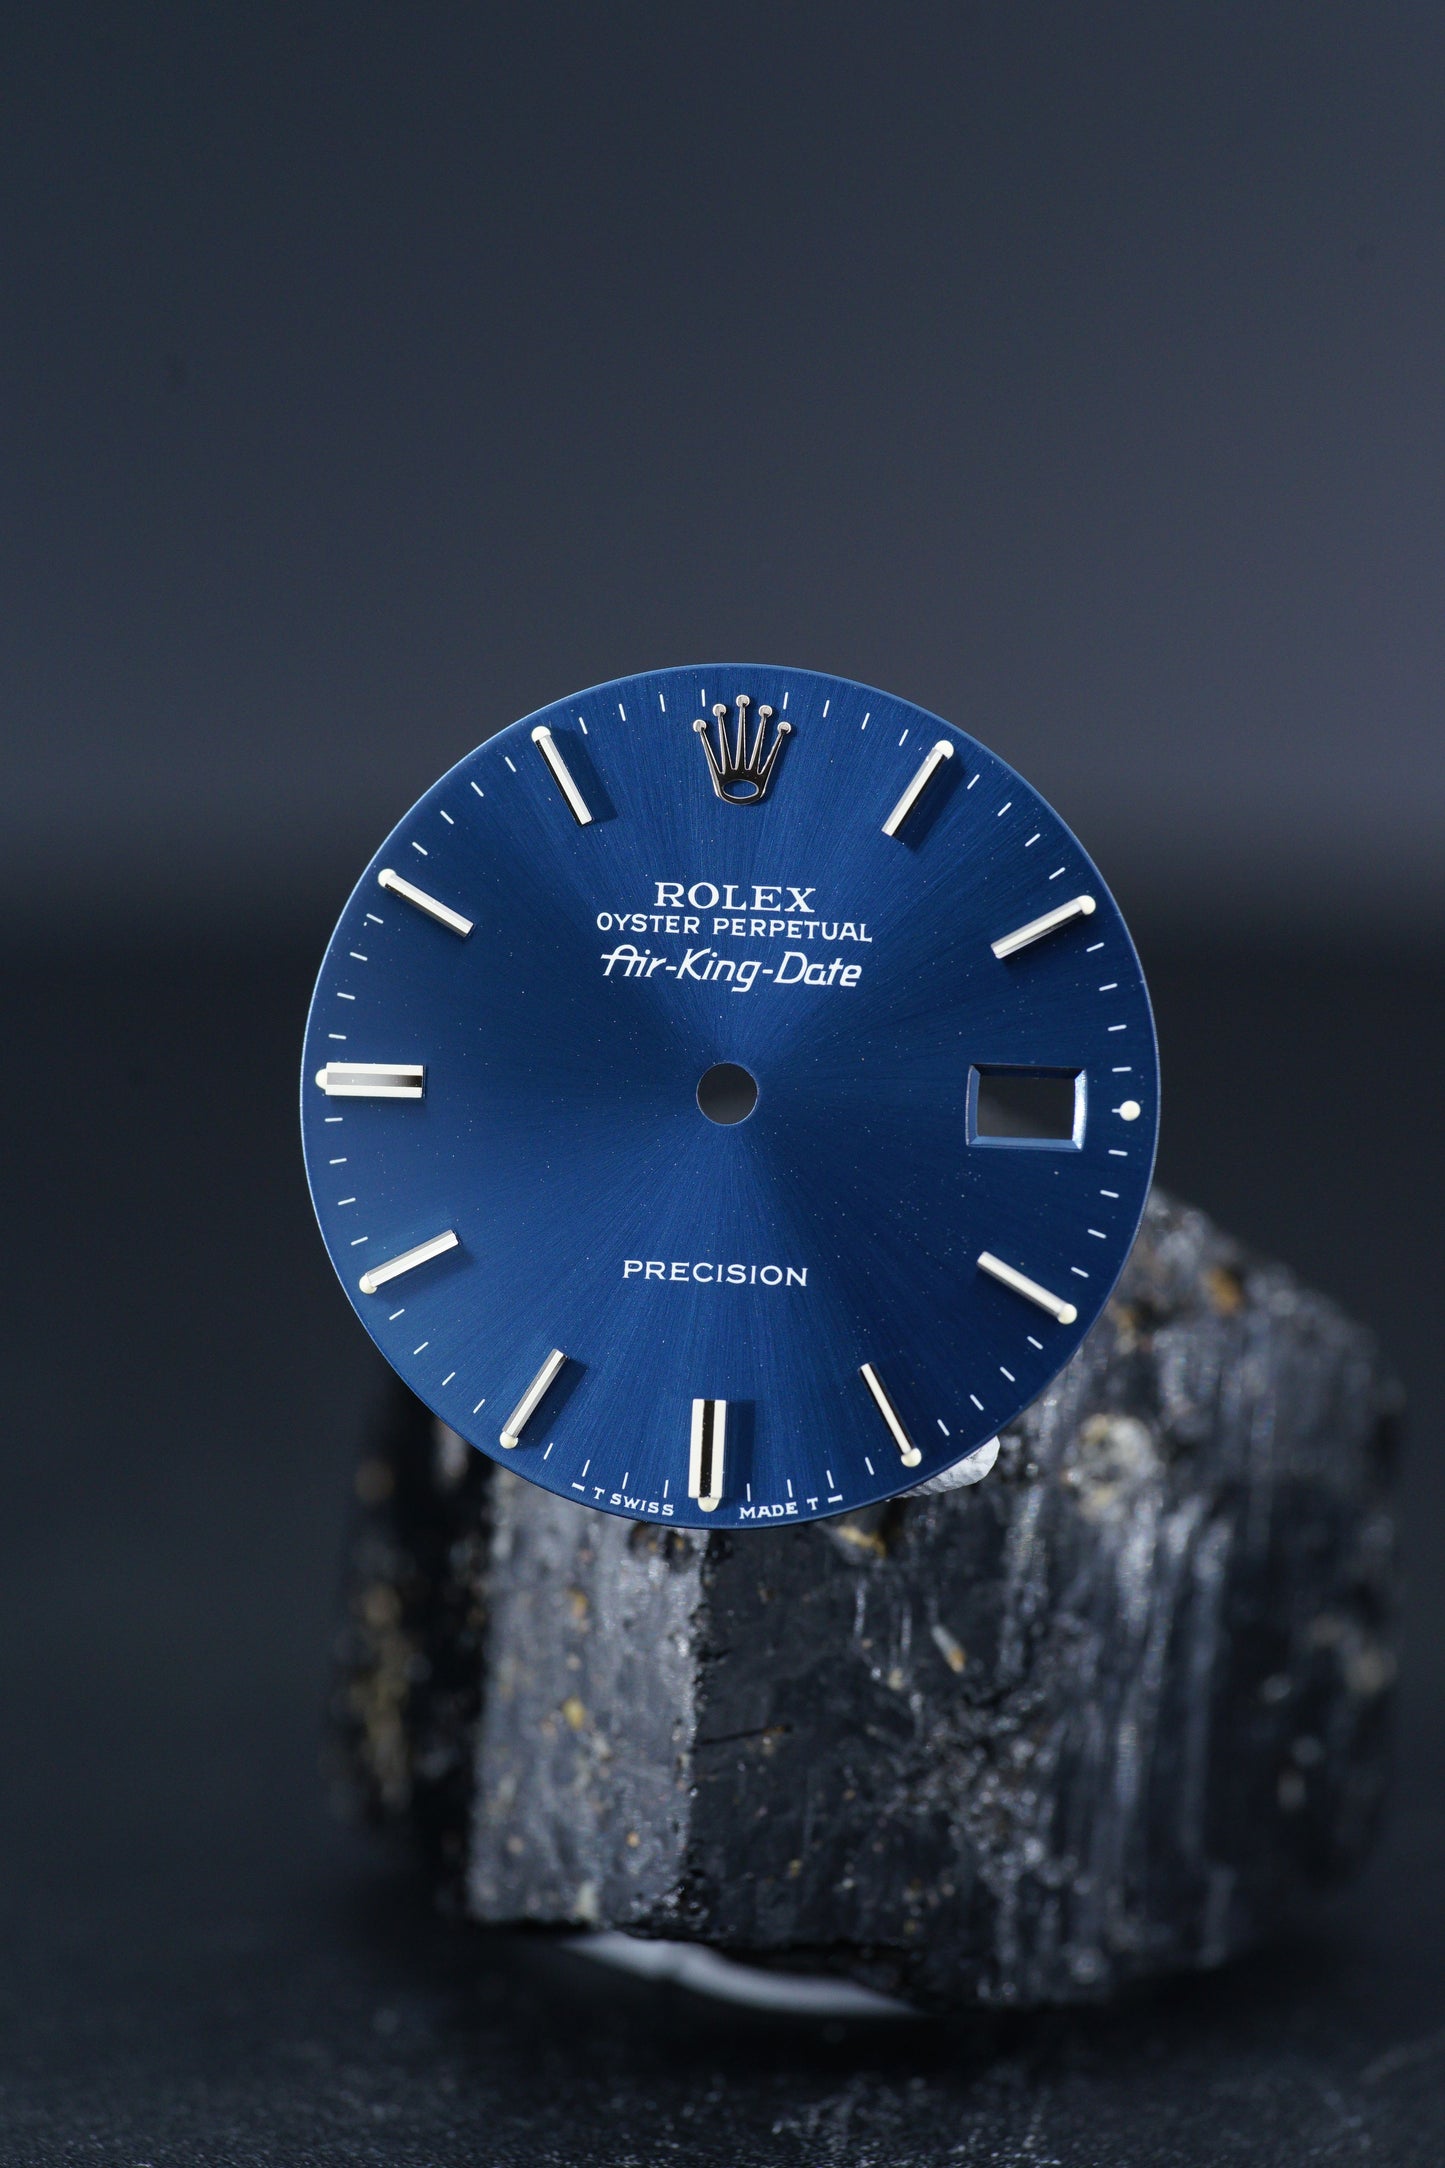 Rolex NOS Zifferblatt Blau für Air-King-Date 5700 Tritium